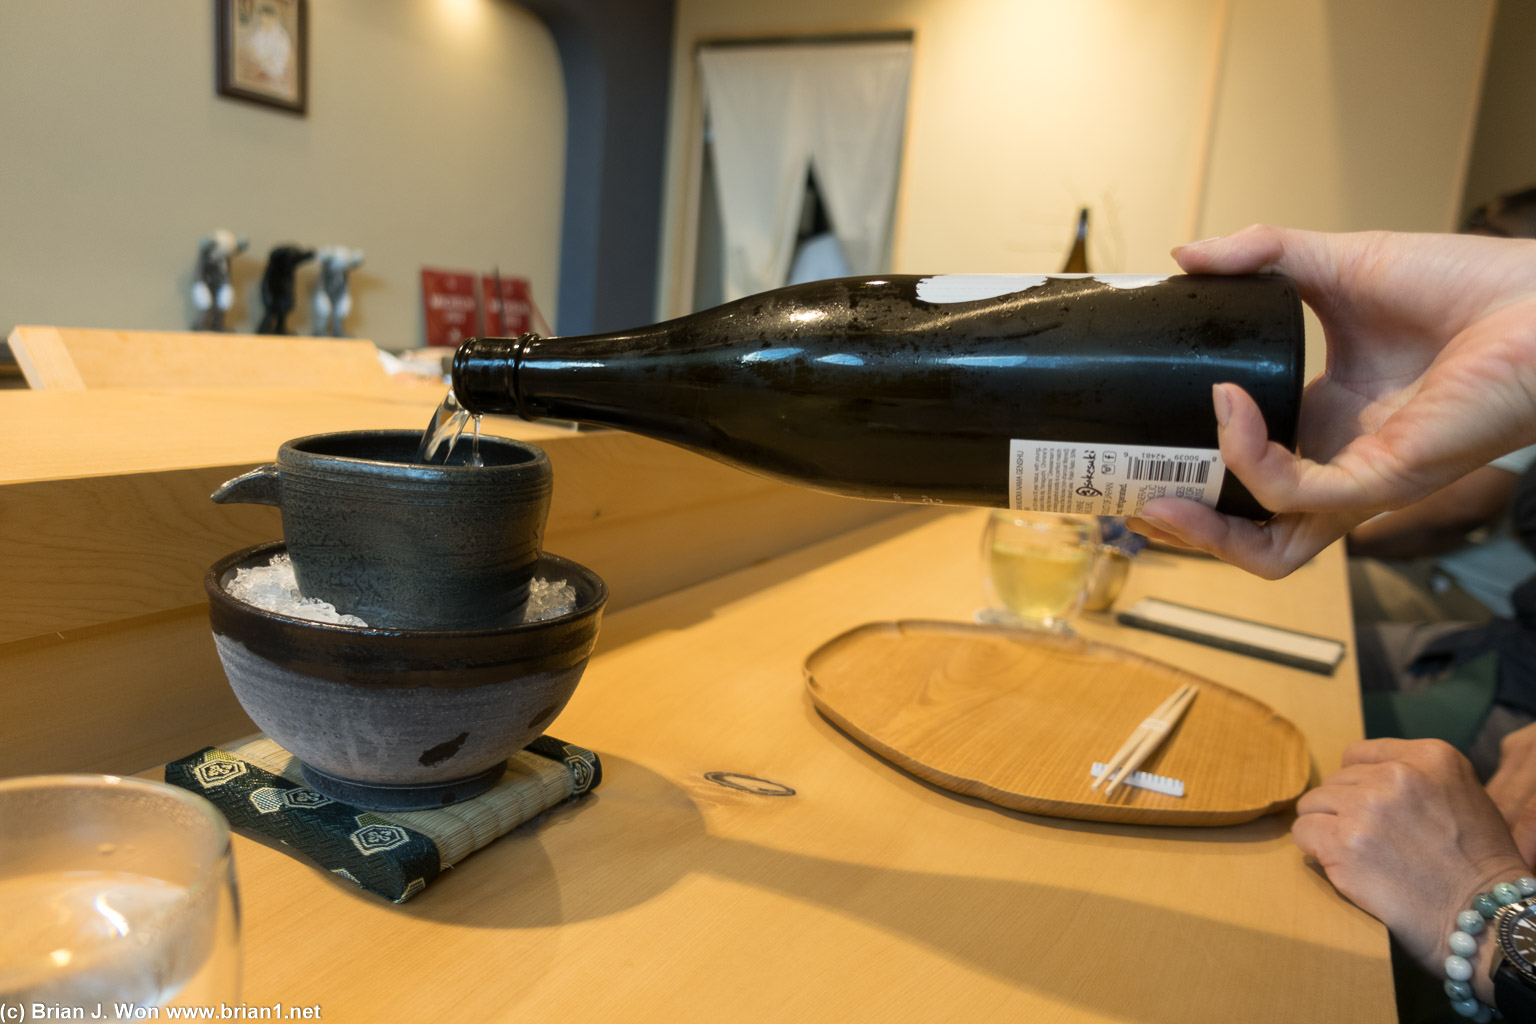 Pouring sake.